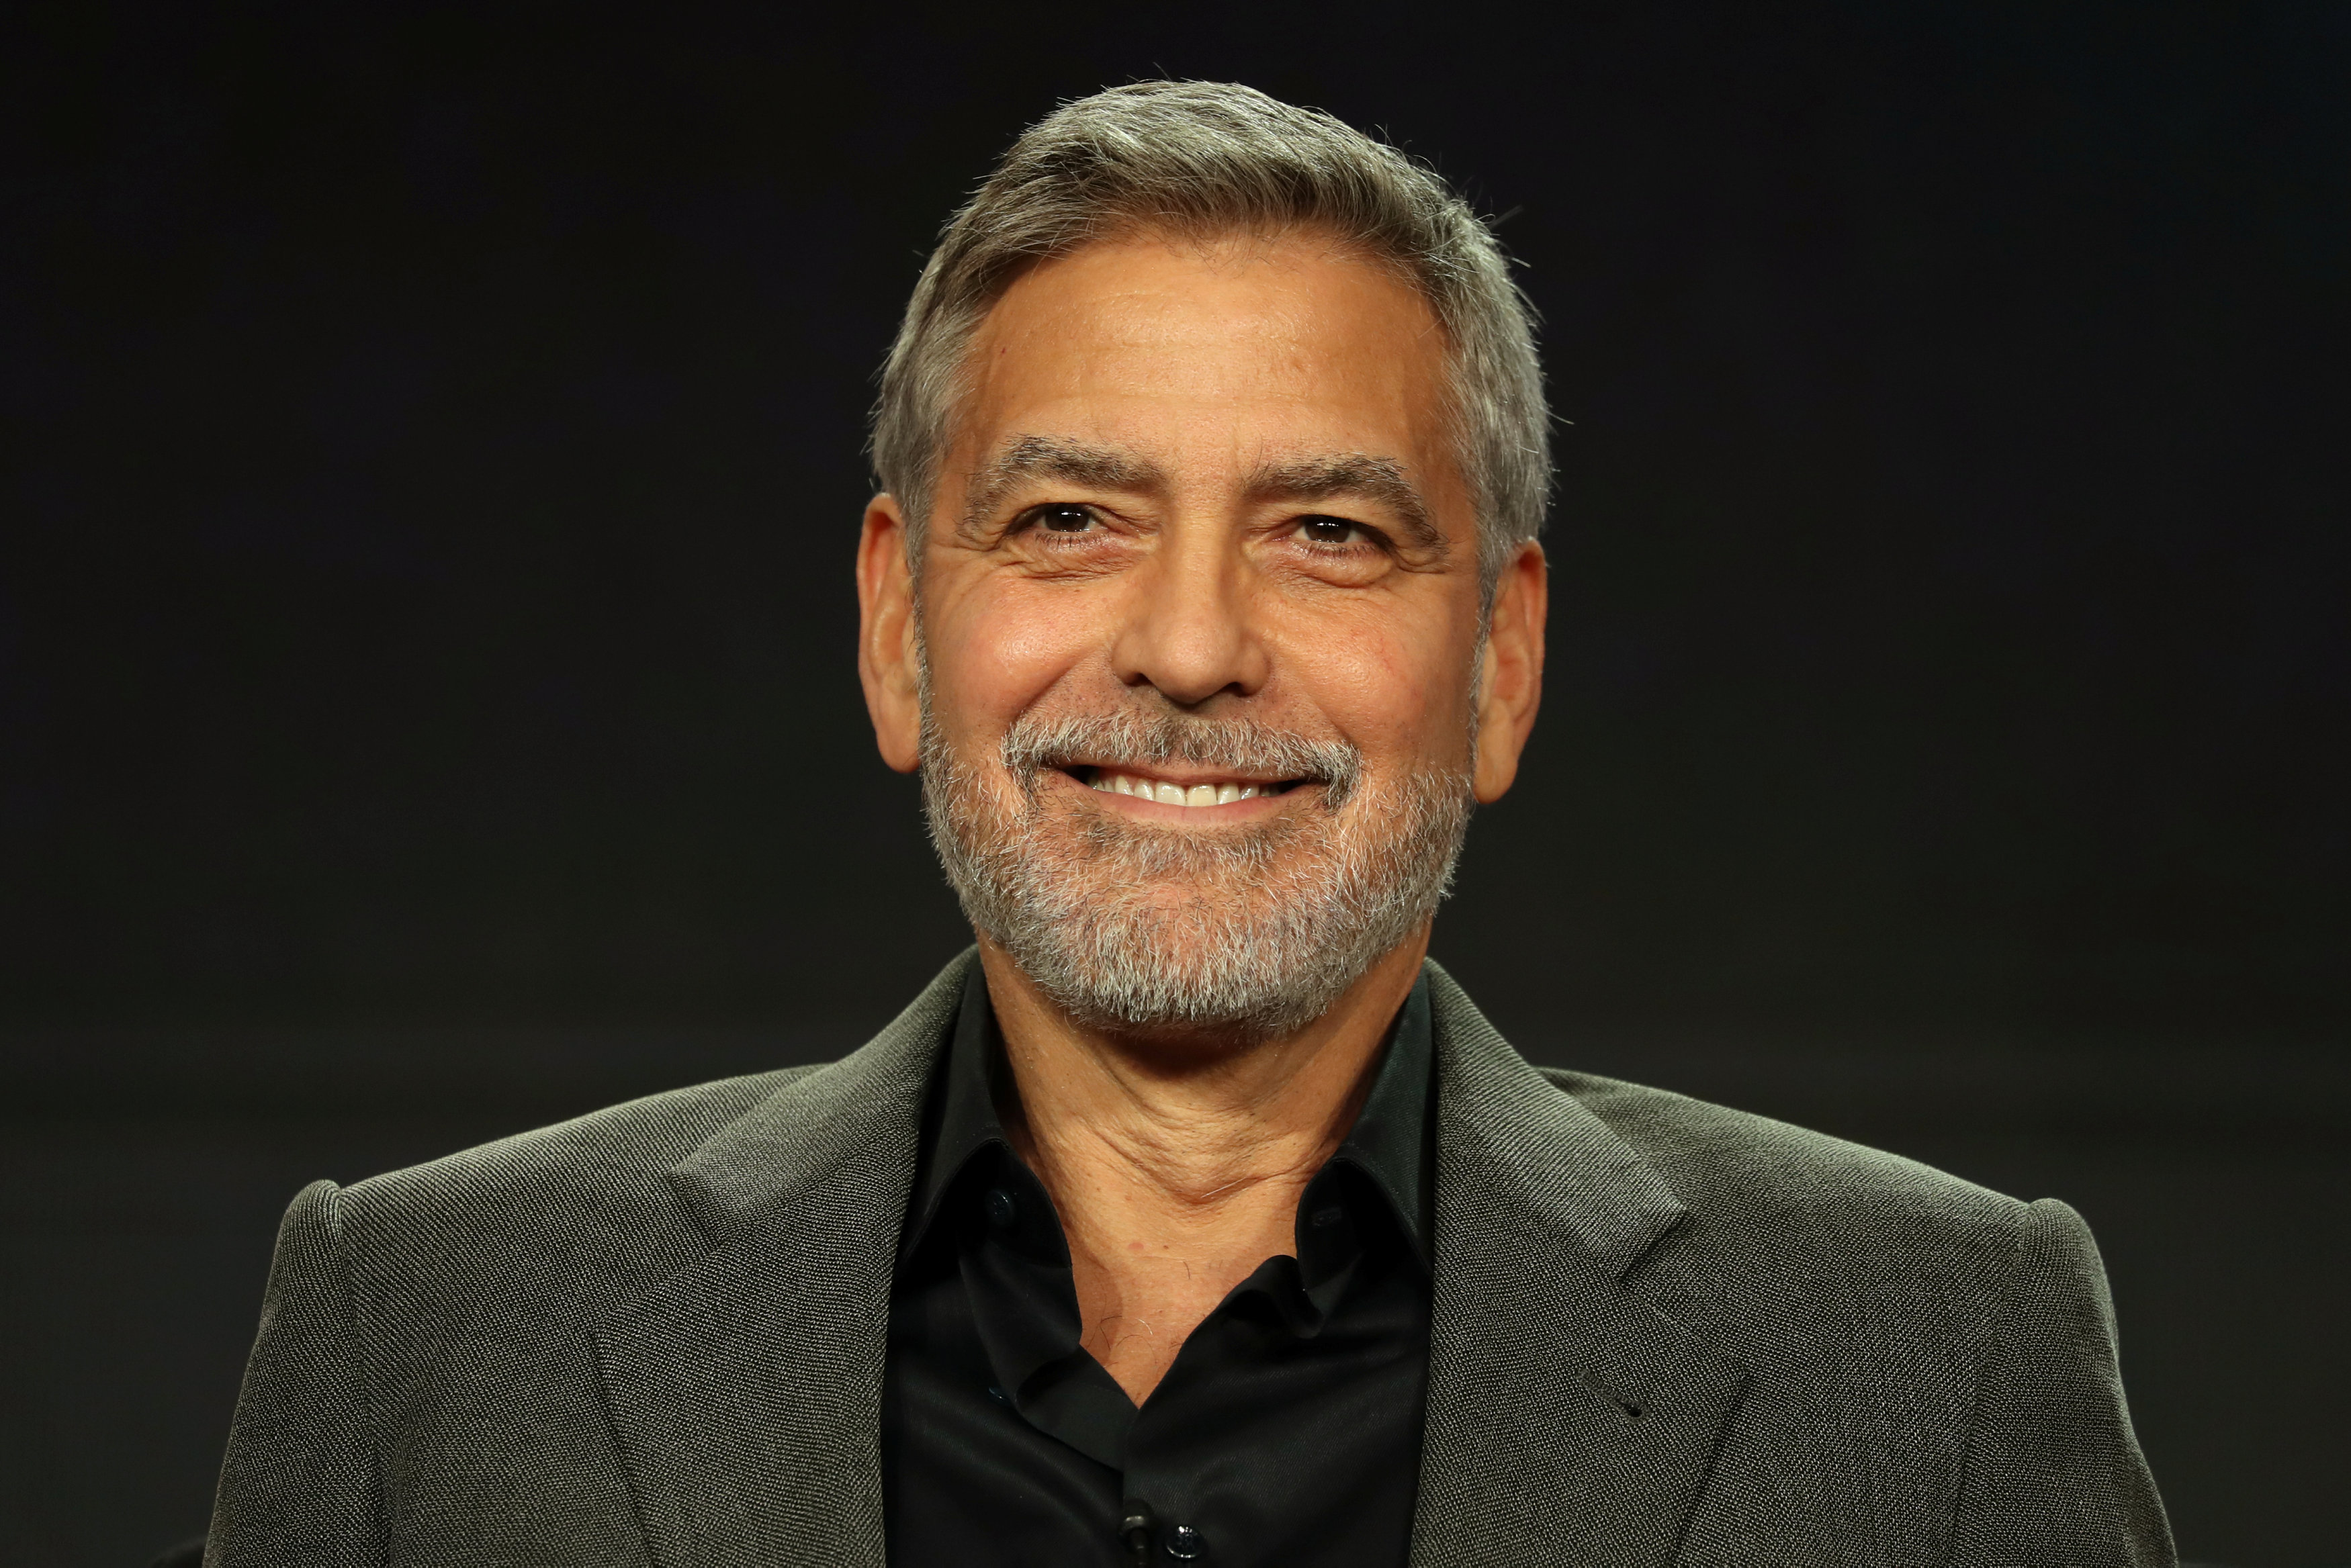 Clooney no teme involucrarse con las causas en las que cree (Crédito: Reuters)